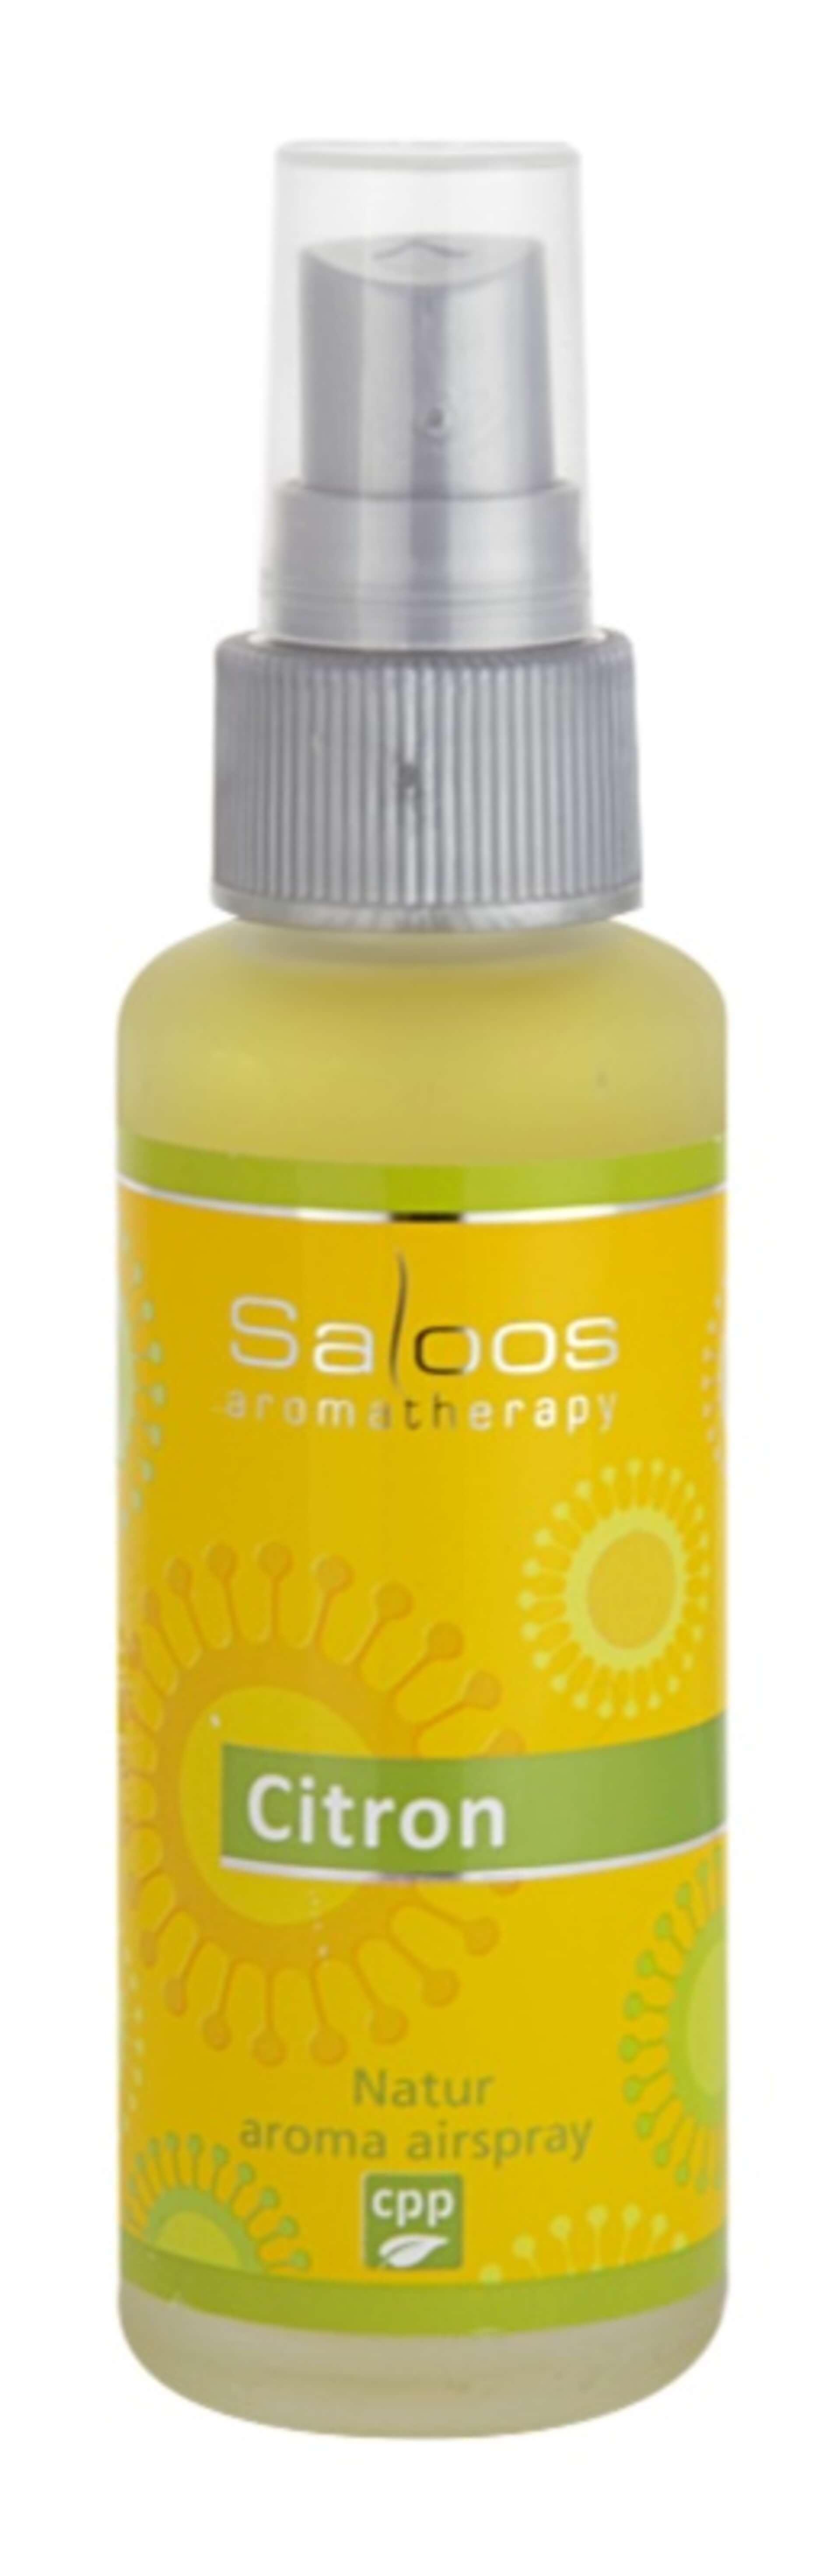 Saloos Natur aróma Airspray Citron 50 ml